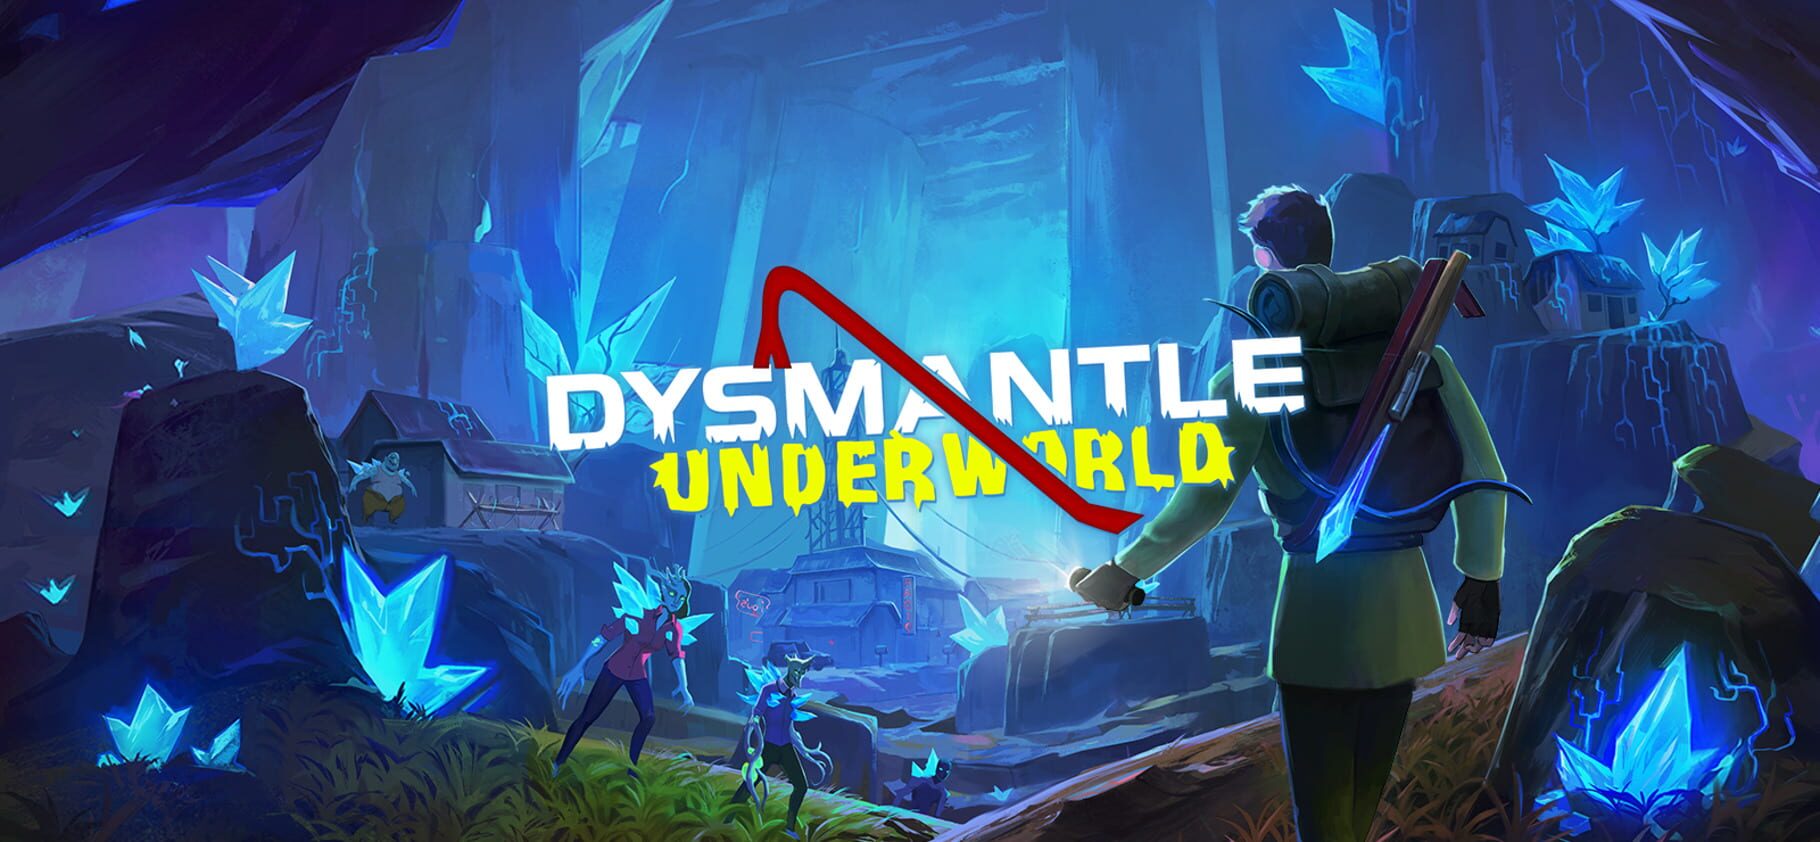 Dysmantle: Underworld artwork